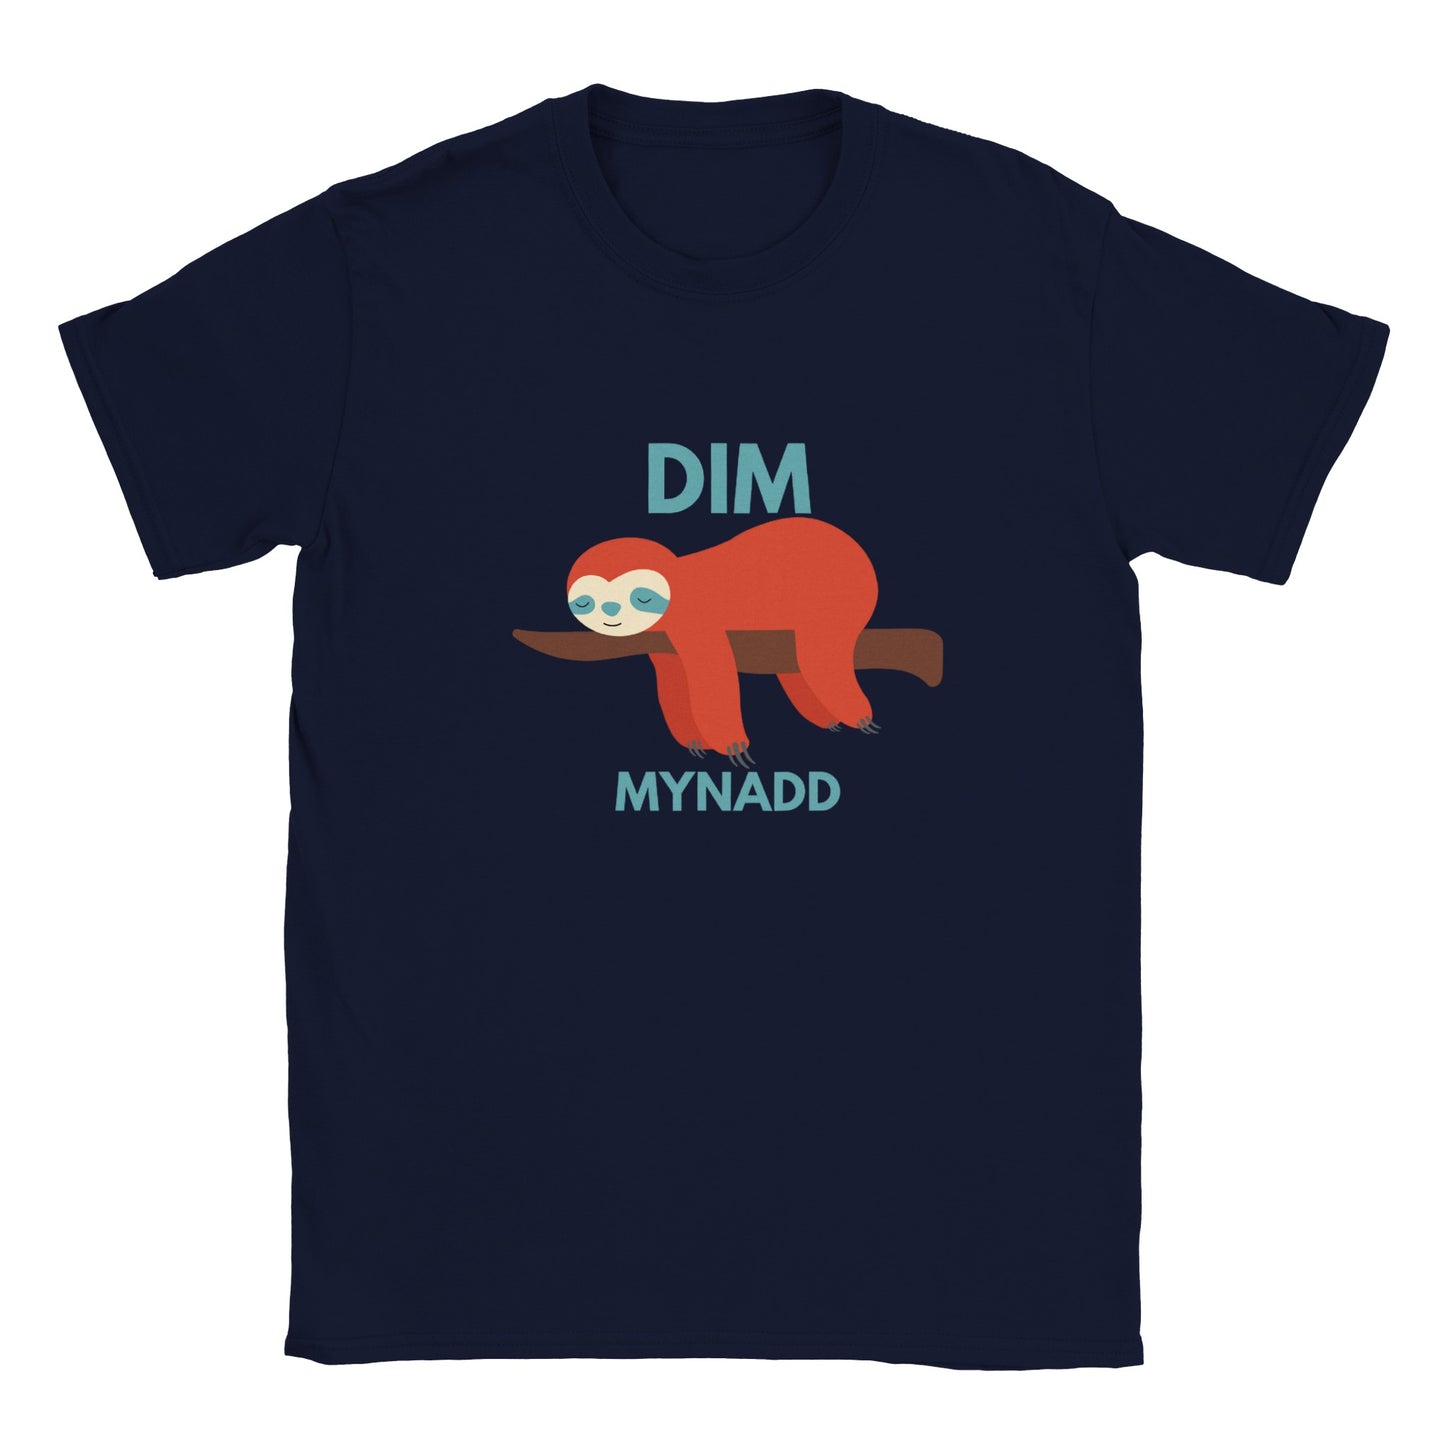 Dim Mynadd - Classic Kids Crewneck T-shirt